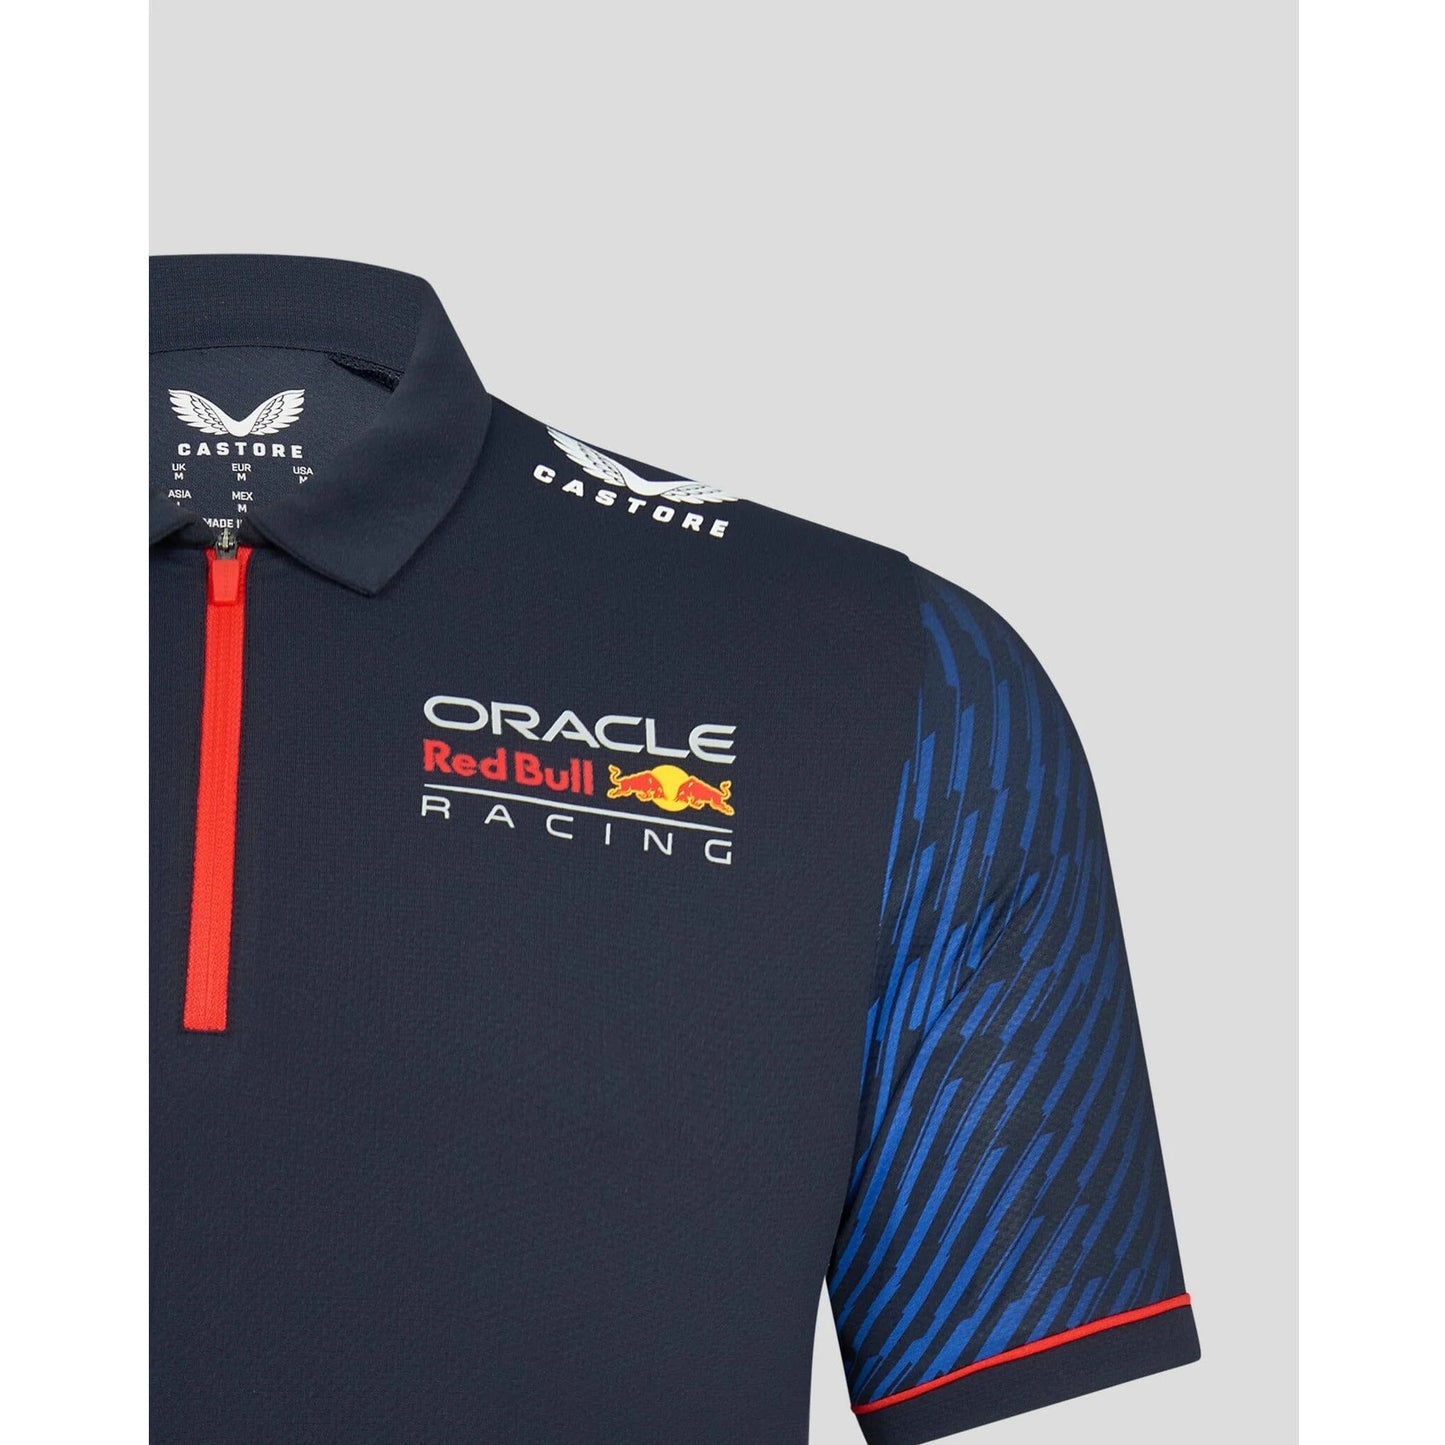 Sergio Perez F1 T-Shirts, Checo Formula 1 Clothing, Shirts, Merchandise